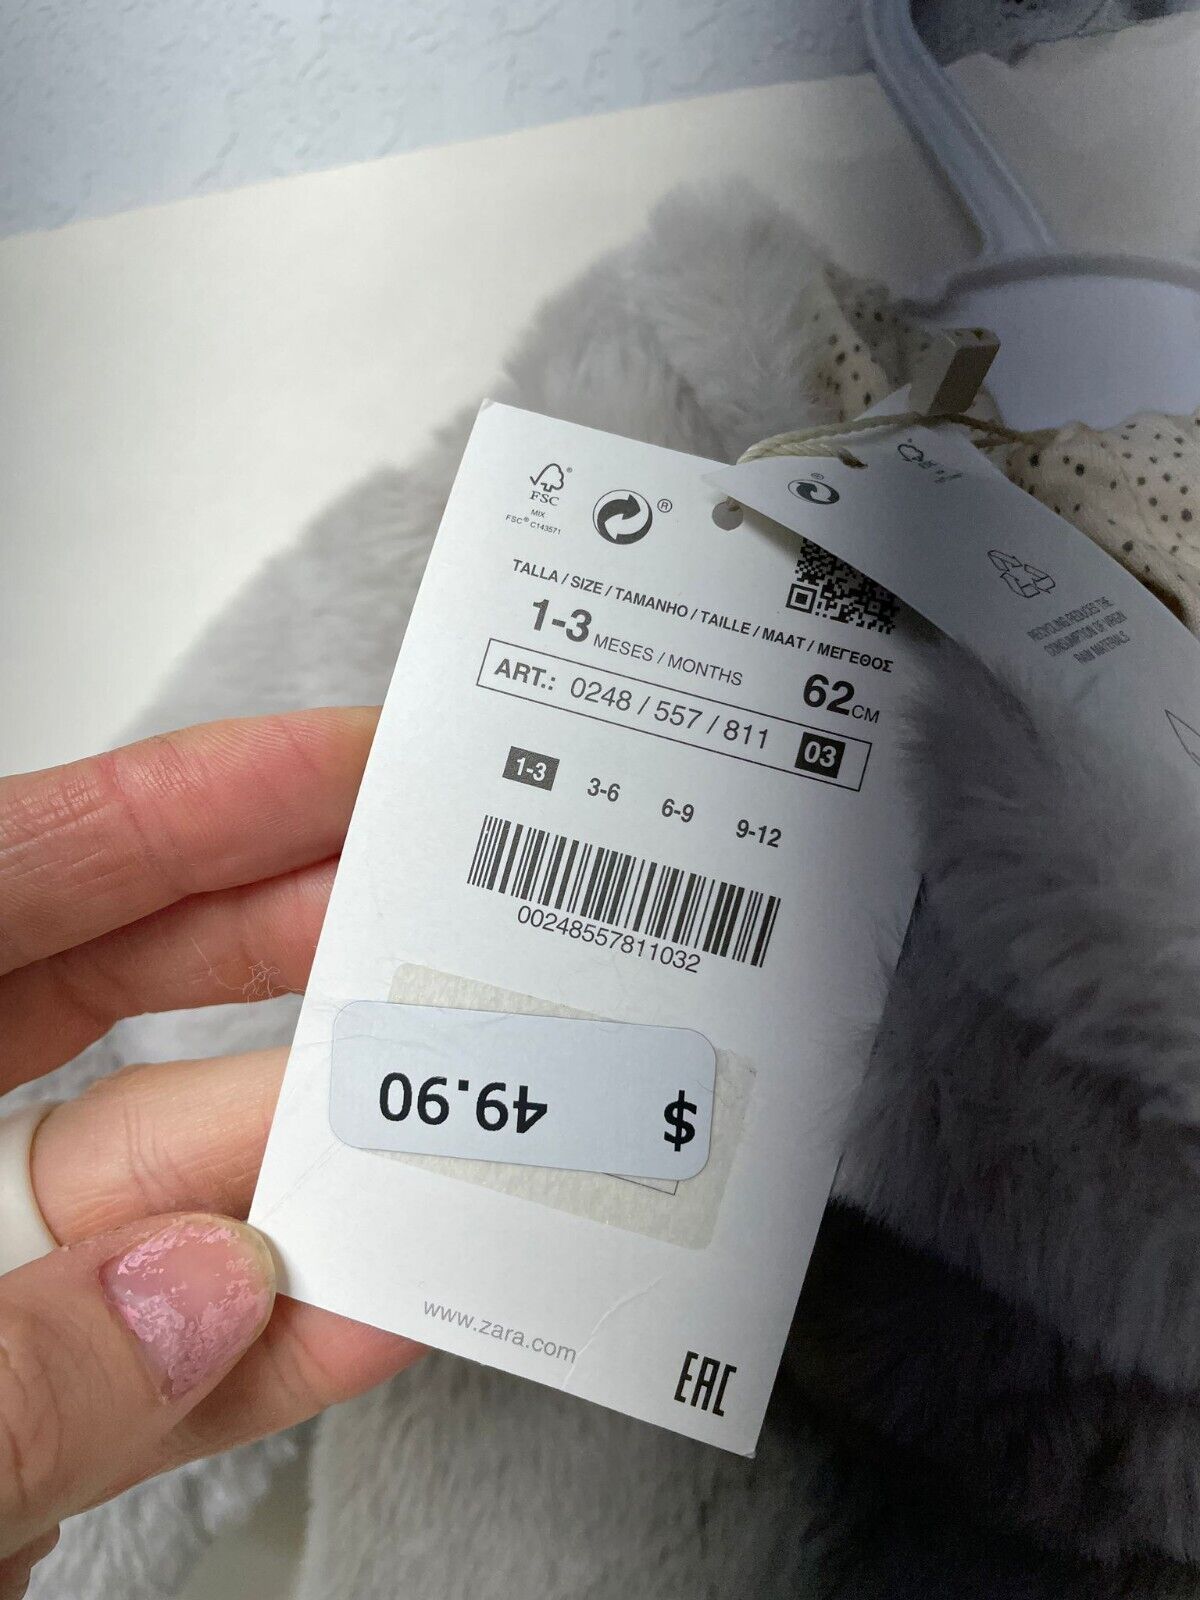 Zara Baby Faux Fur Romper 1 Piece Teddy Bear Hooded Jumpsuit 0248/557 Gray Plush